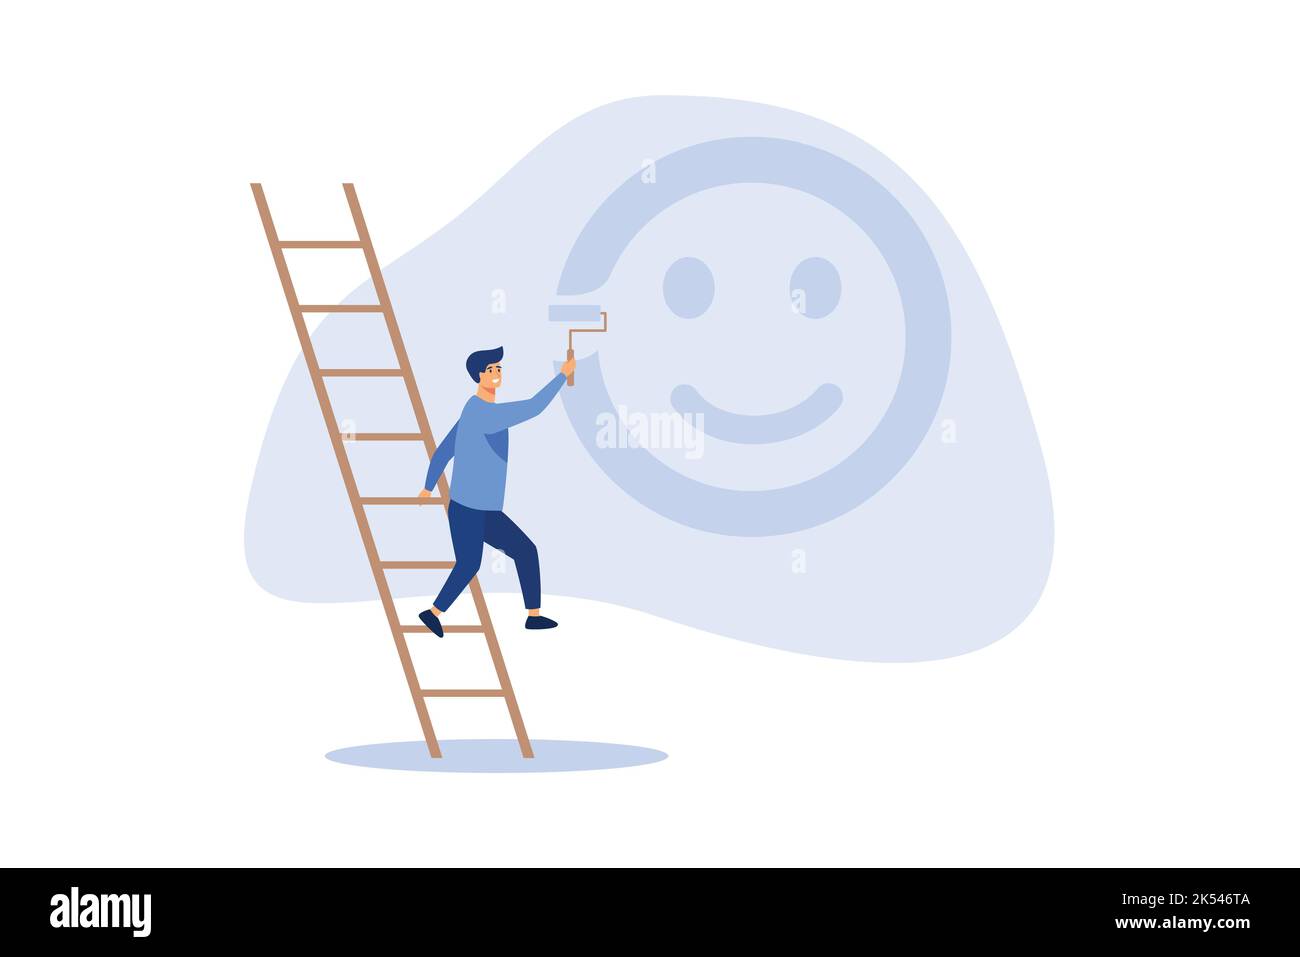 Glück und positives Denken, Optimismus oder Motivation, glückliches Leben zu leben Konzept, glücklicher Junge klettern Leiter zu malen Lächeln Gesicht an die Wand. Stock Vektor